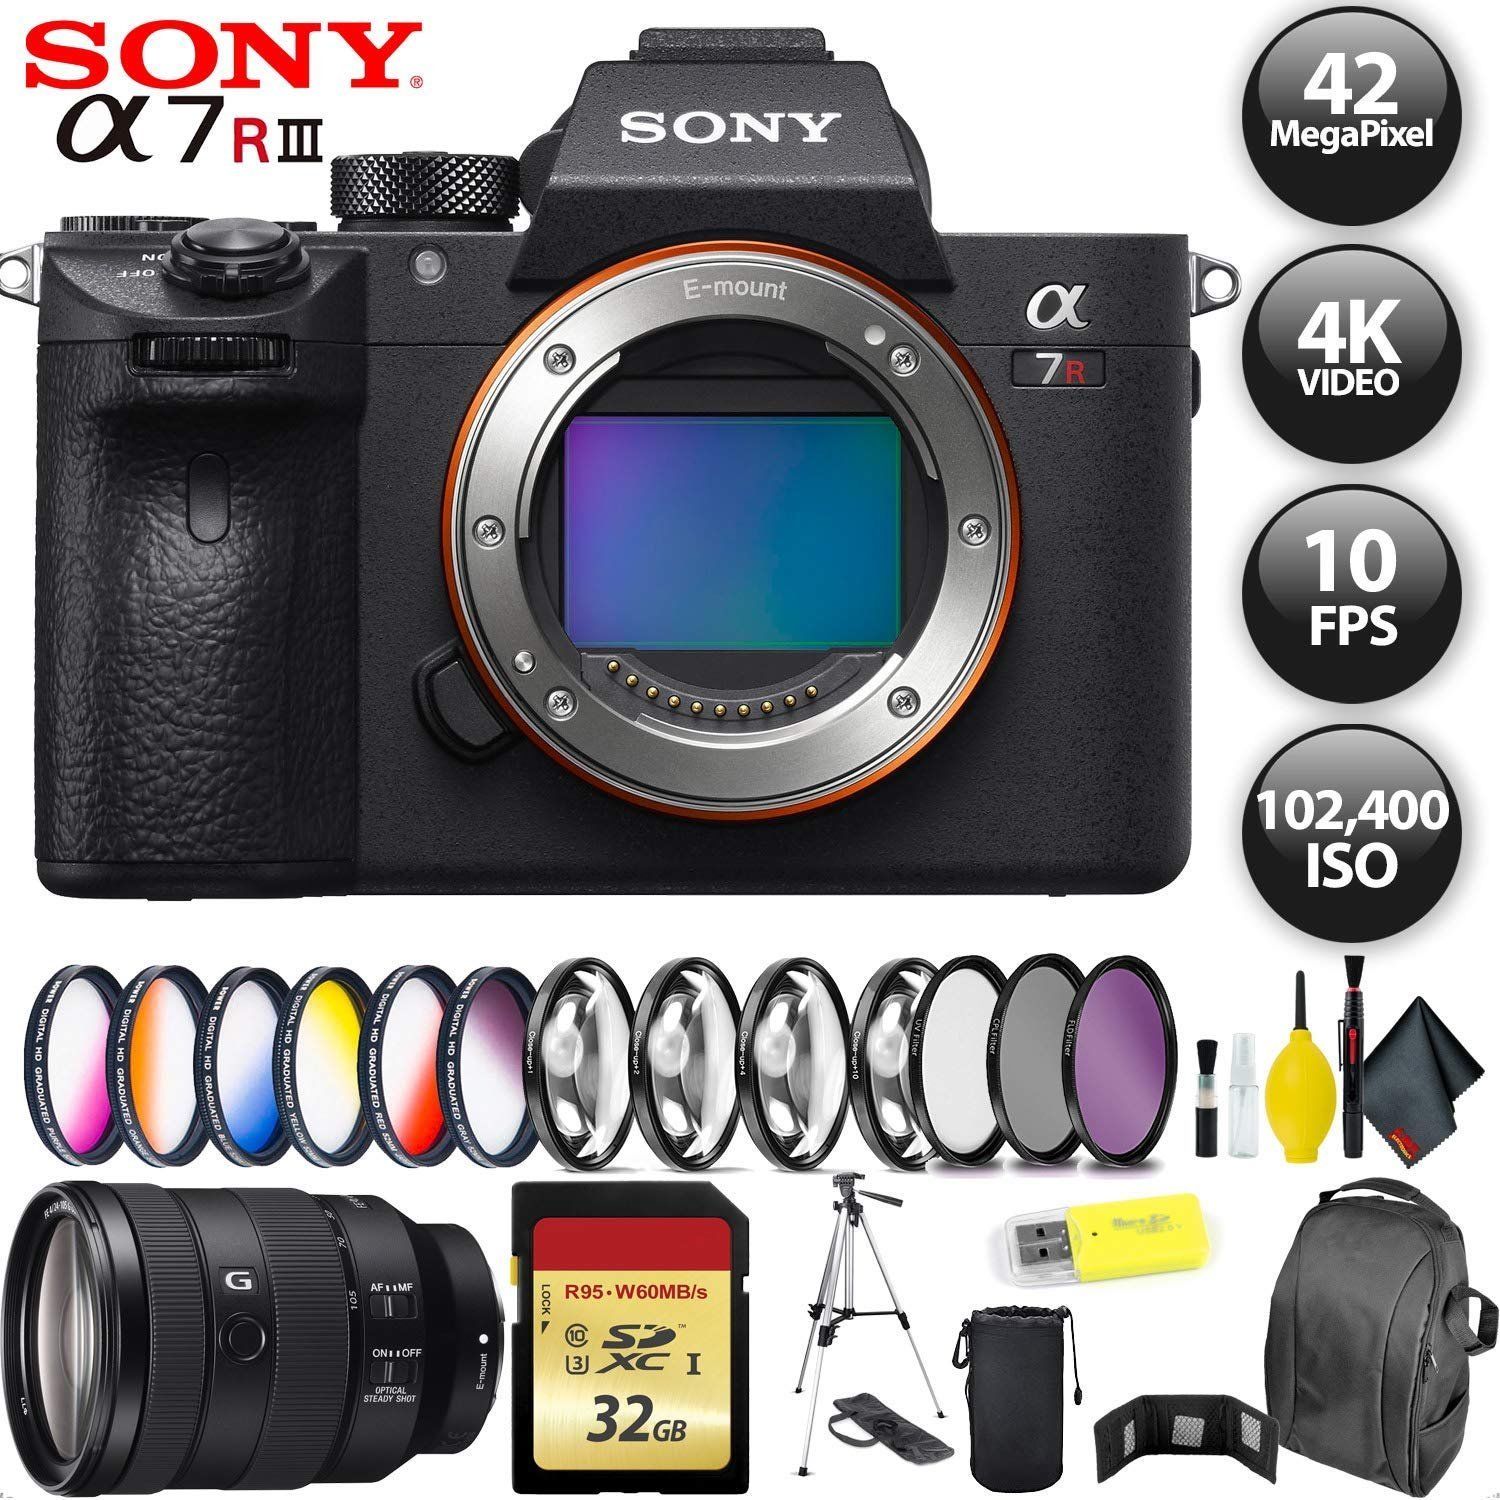 Sony Alpha a7R III Mirrorless Digital Camera + 64GB Memory Card + Sony FE 24-105mm Lens